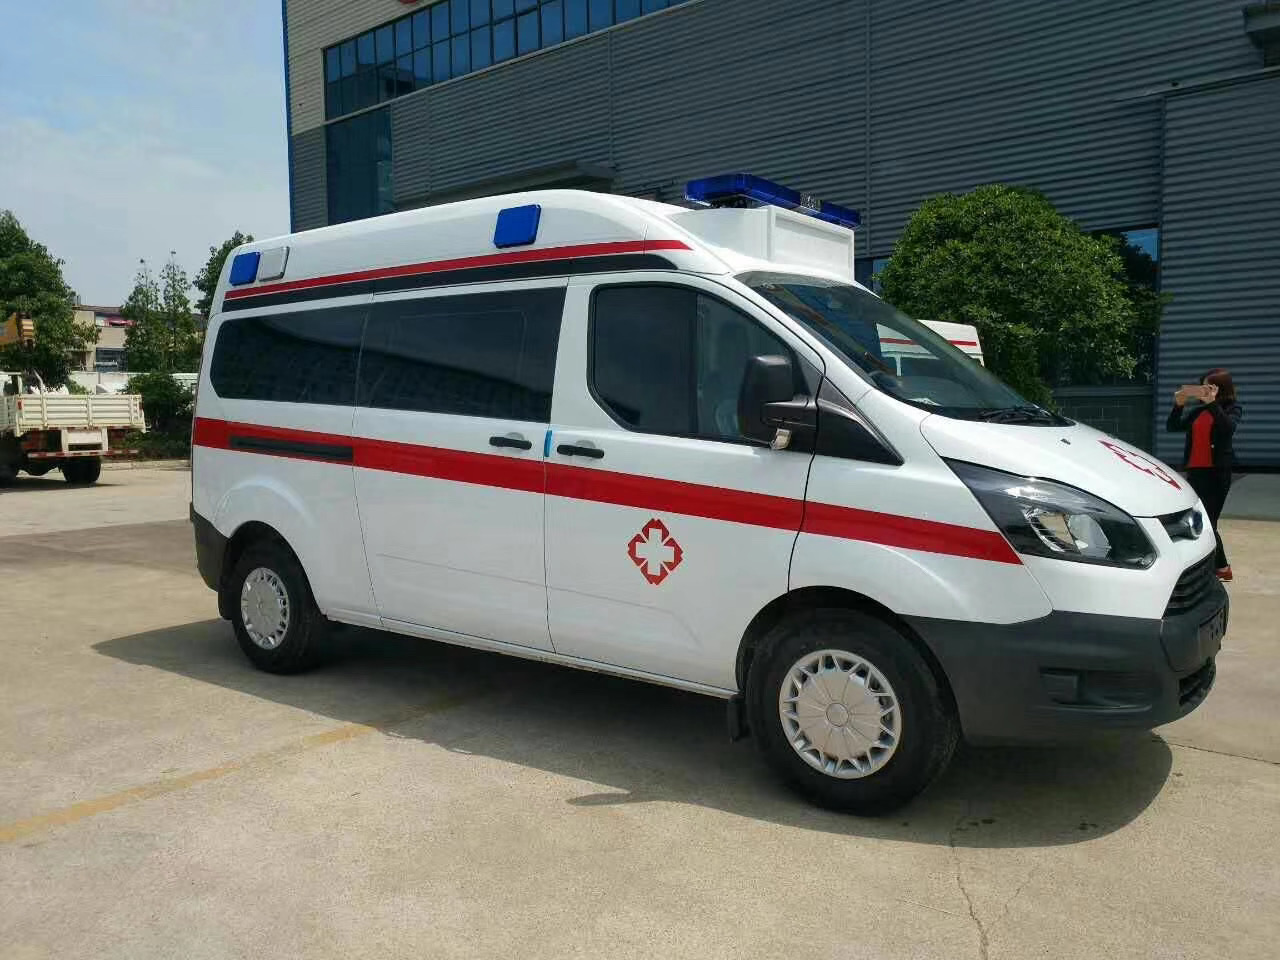 北京东城区出院转院救护车